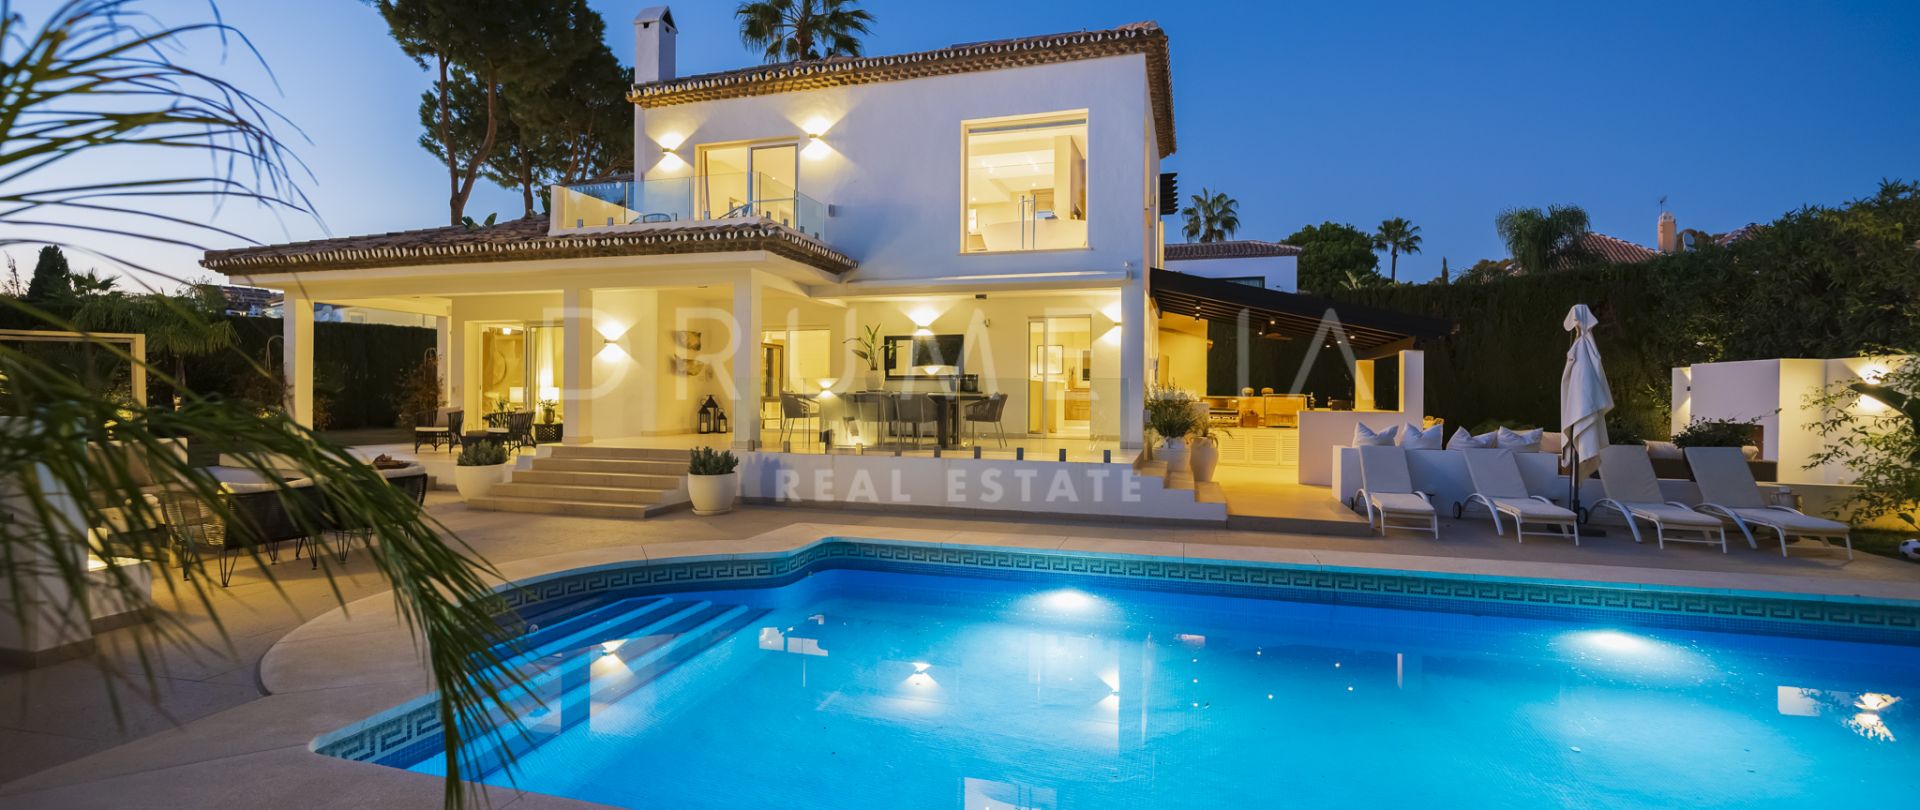 Encantadora villa de estilo andaluz con interior moderno y de lujo en Marbella Country Club